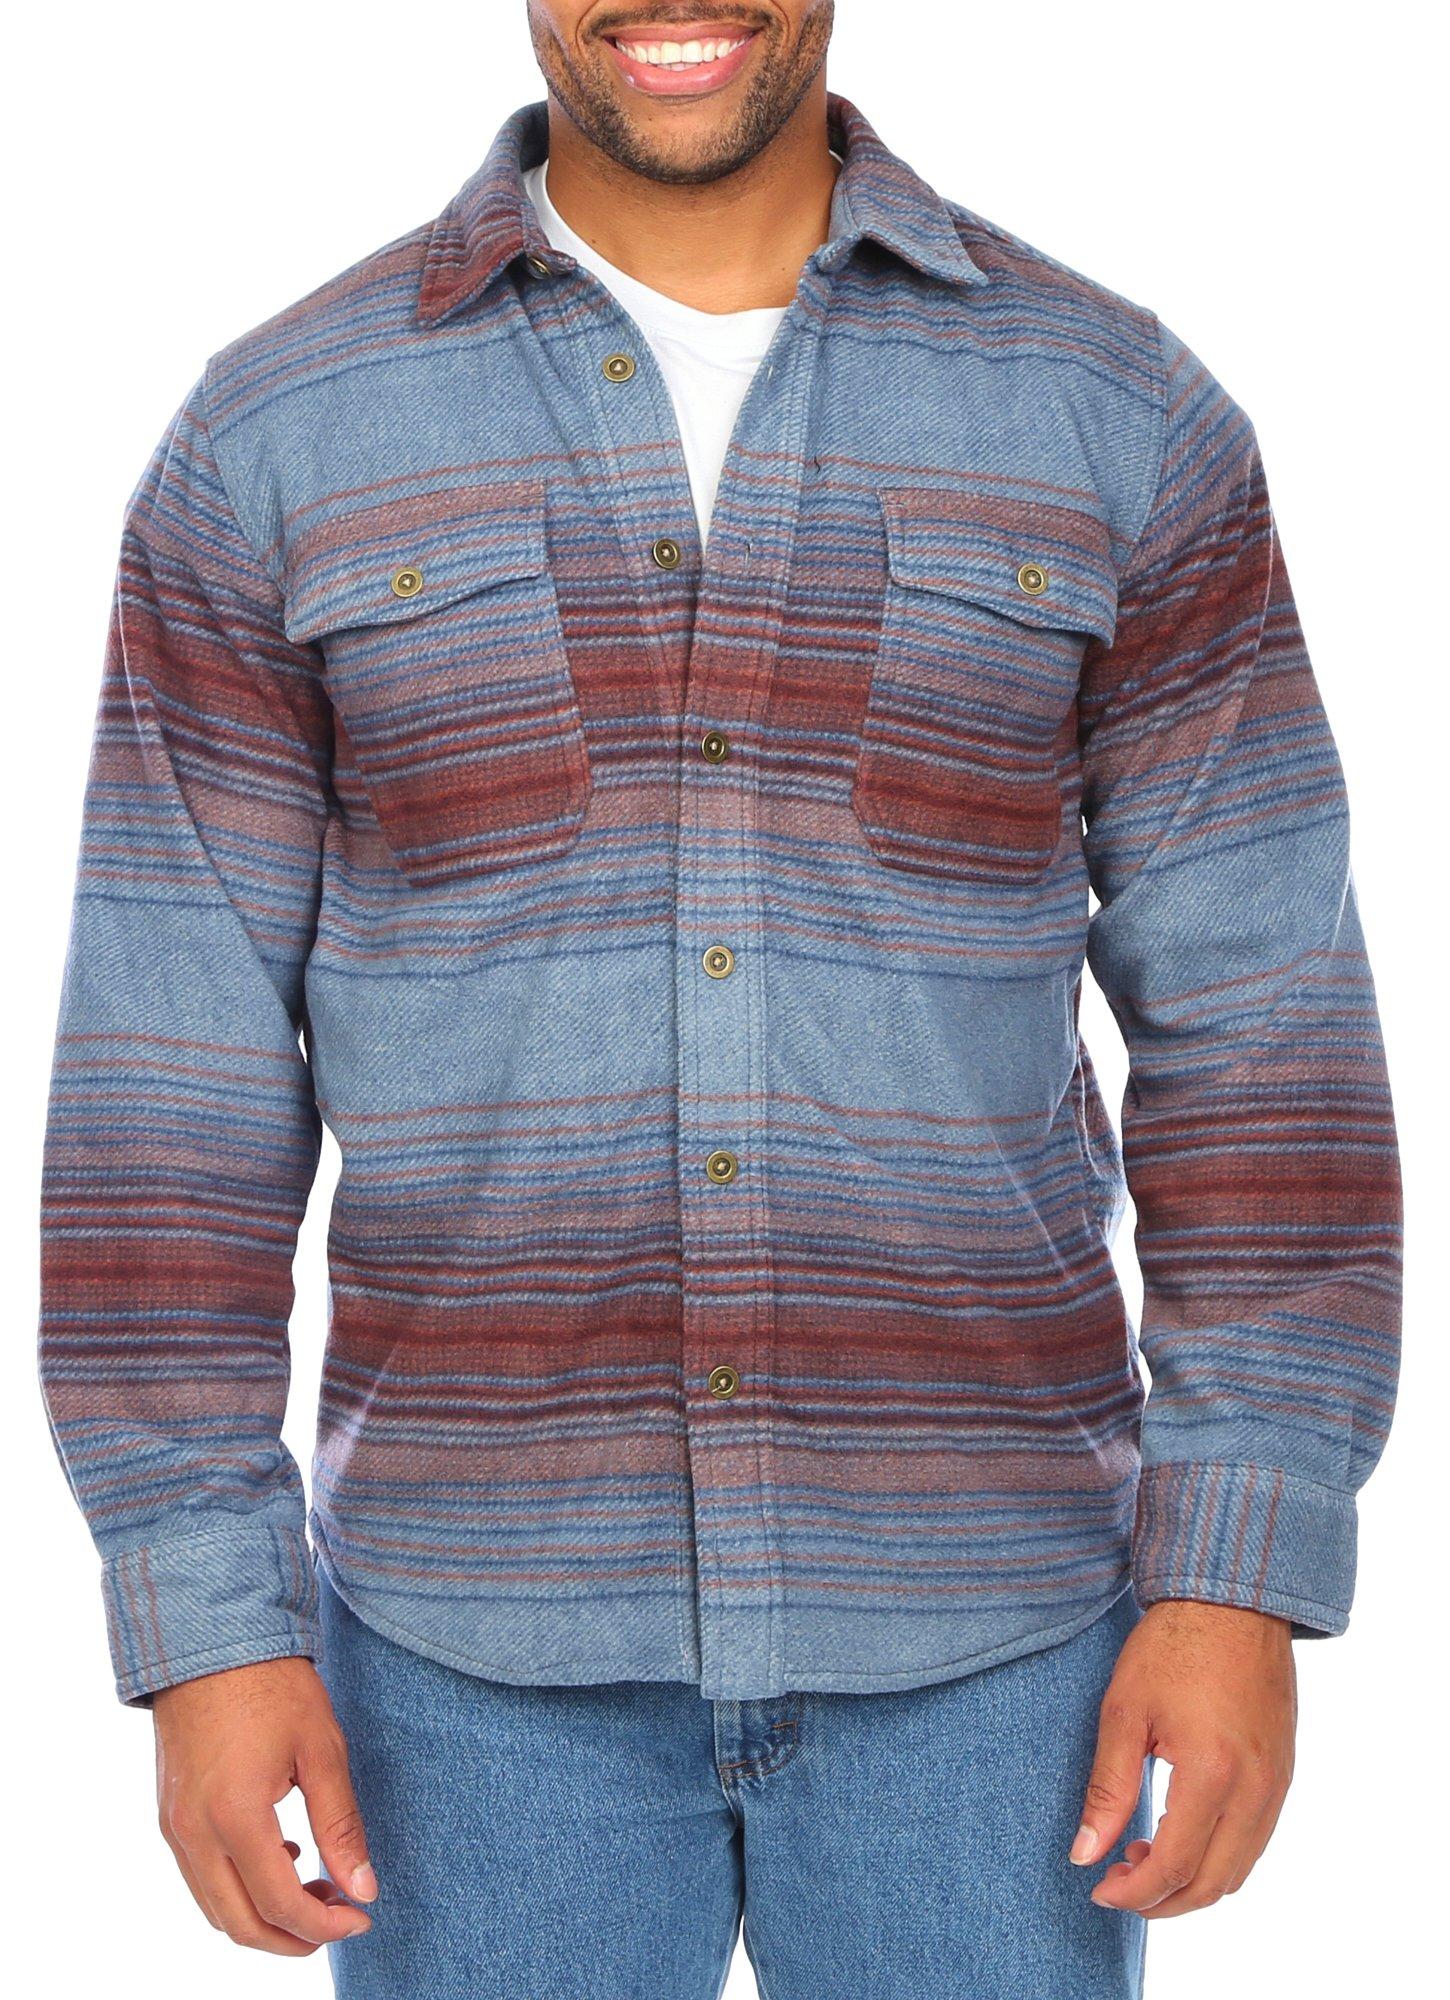 Men's Fleece Stripe Shacket - Blue